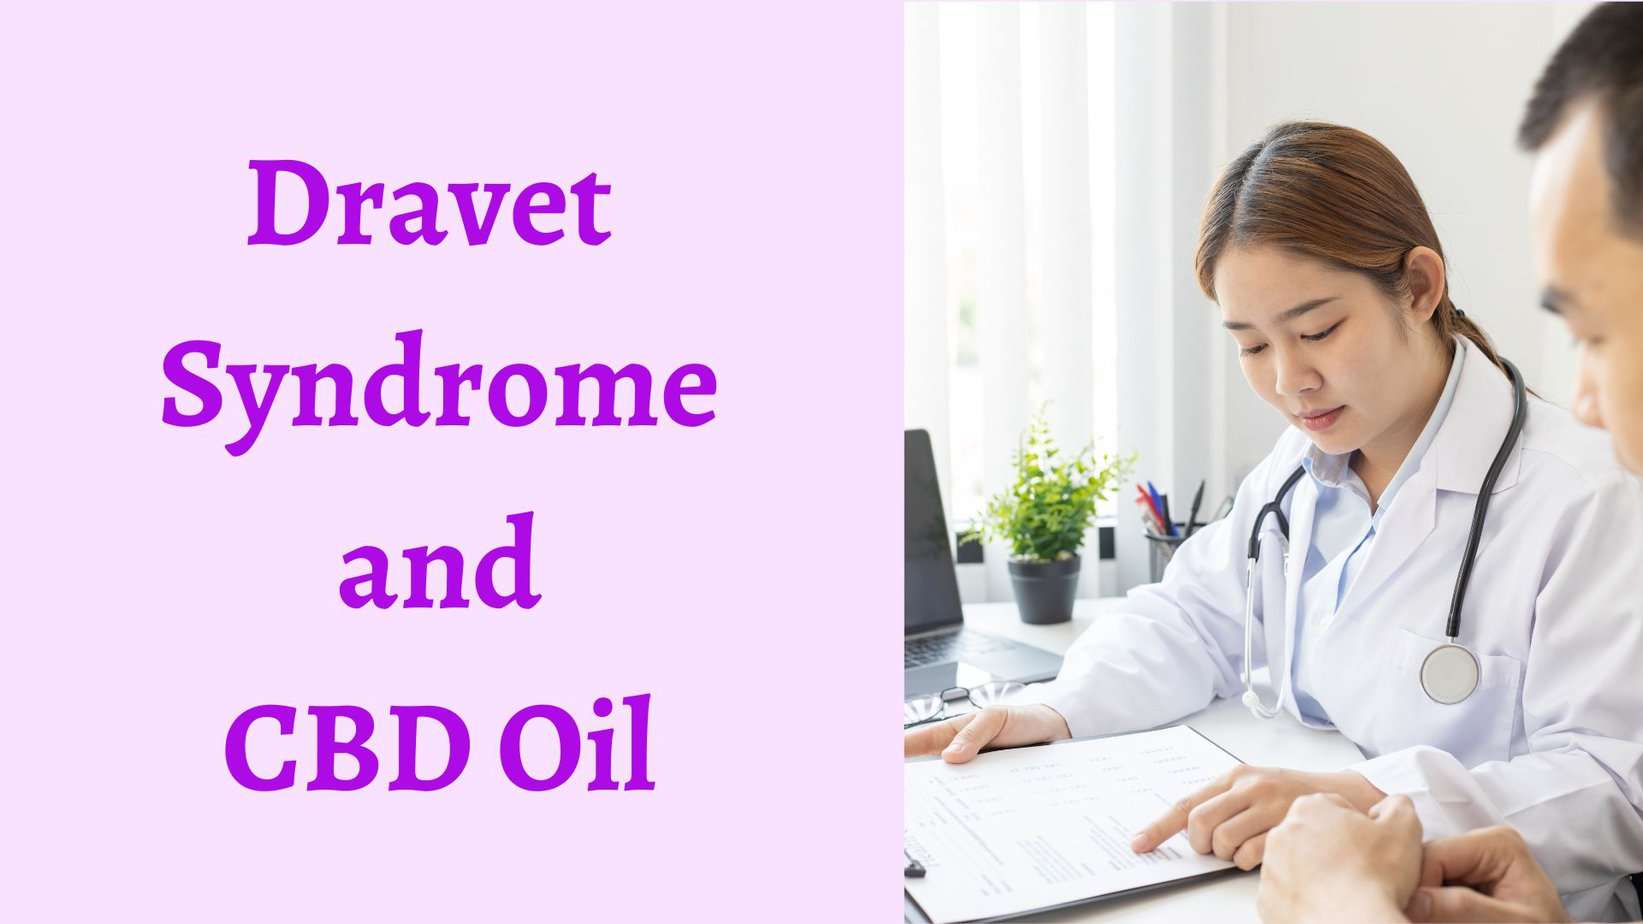 Dravet syndrome and CBD oil